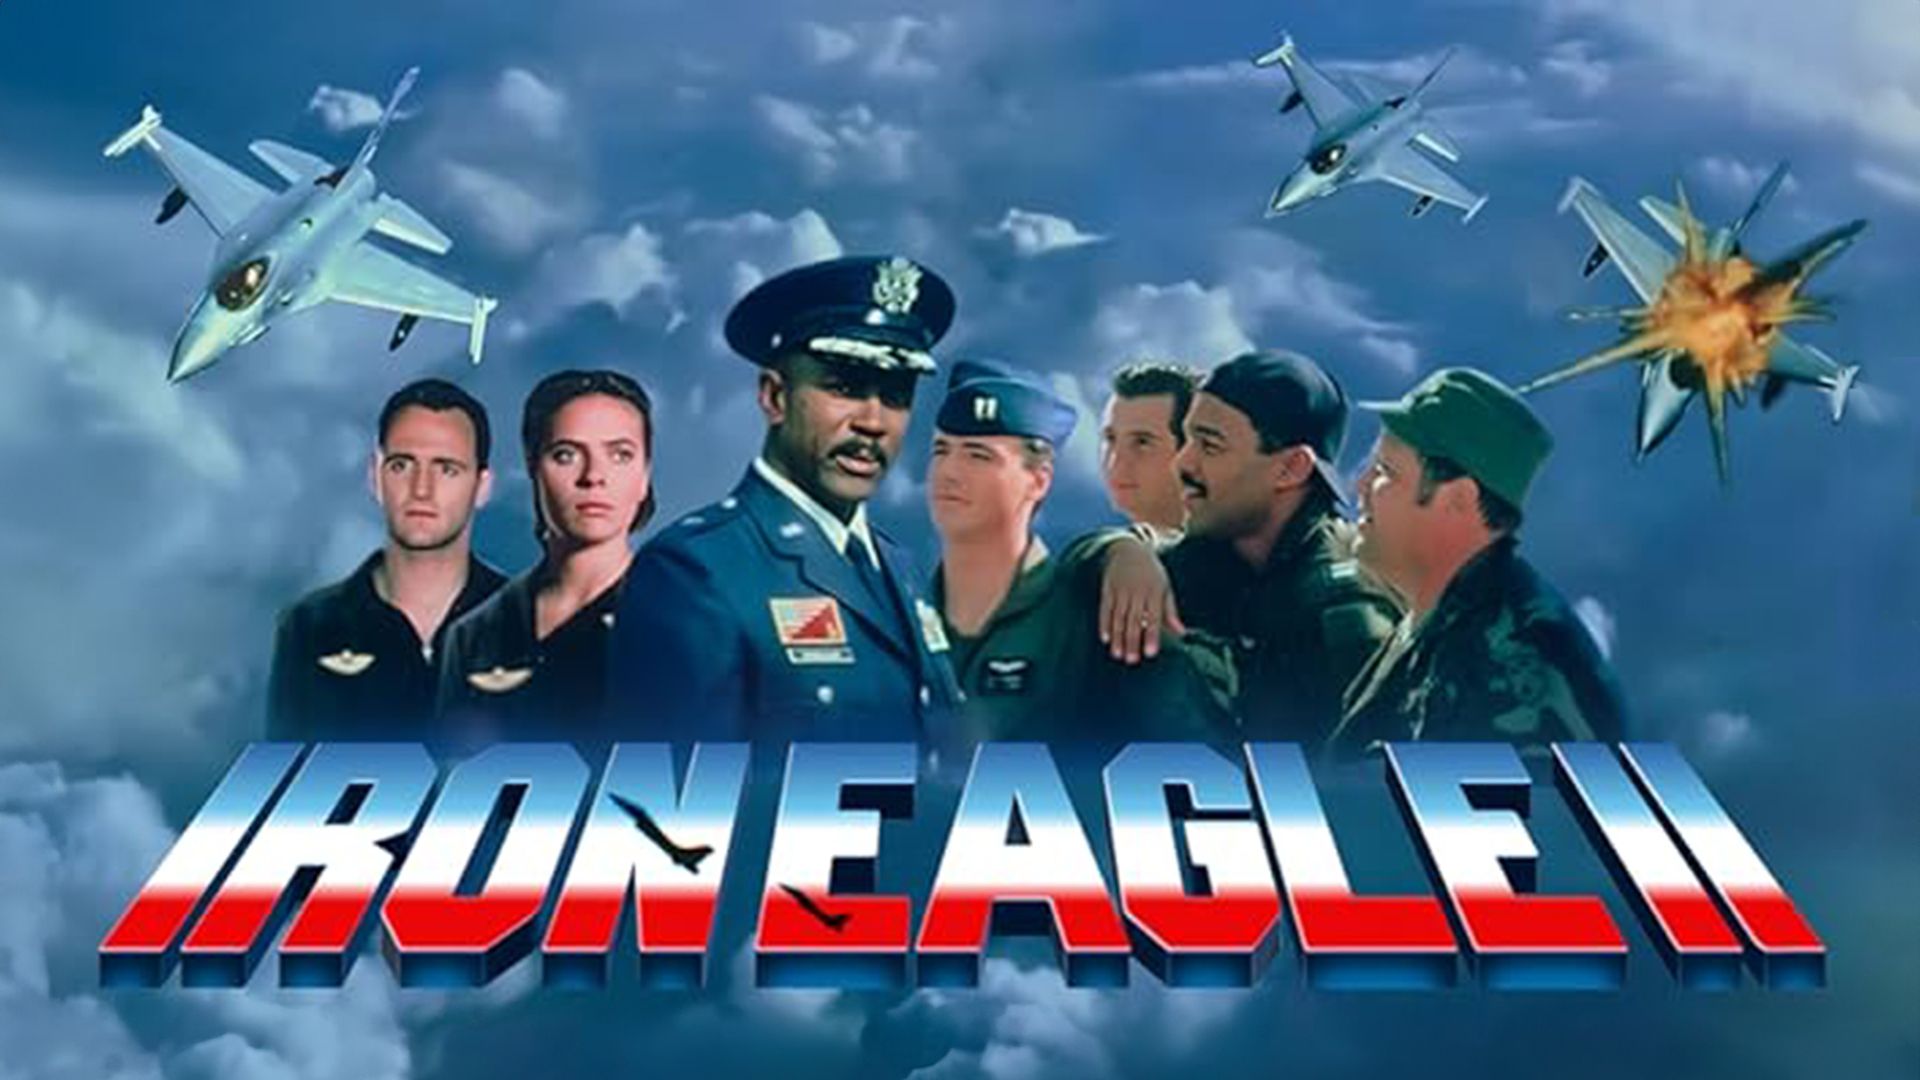 Iron Eagle II